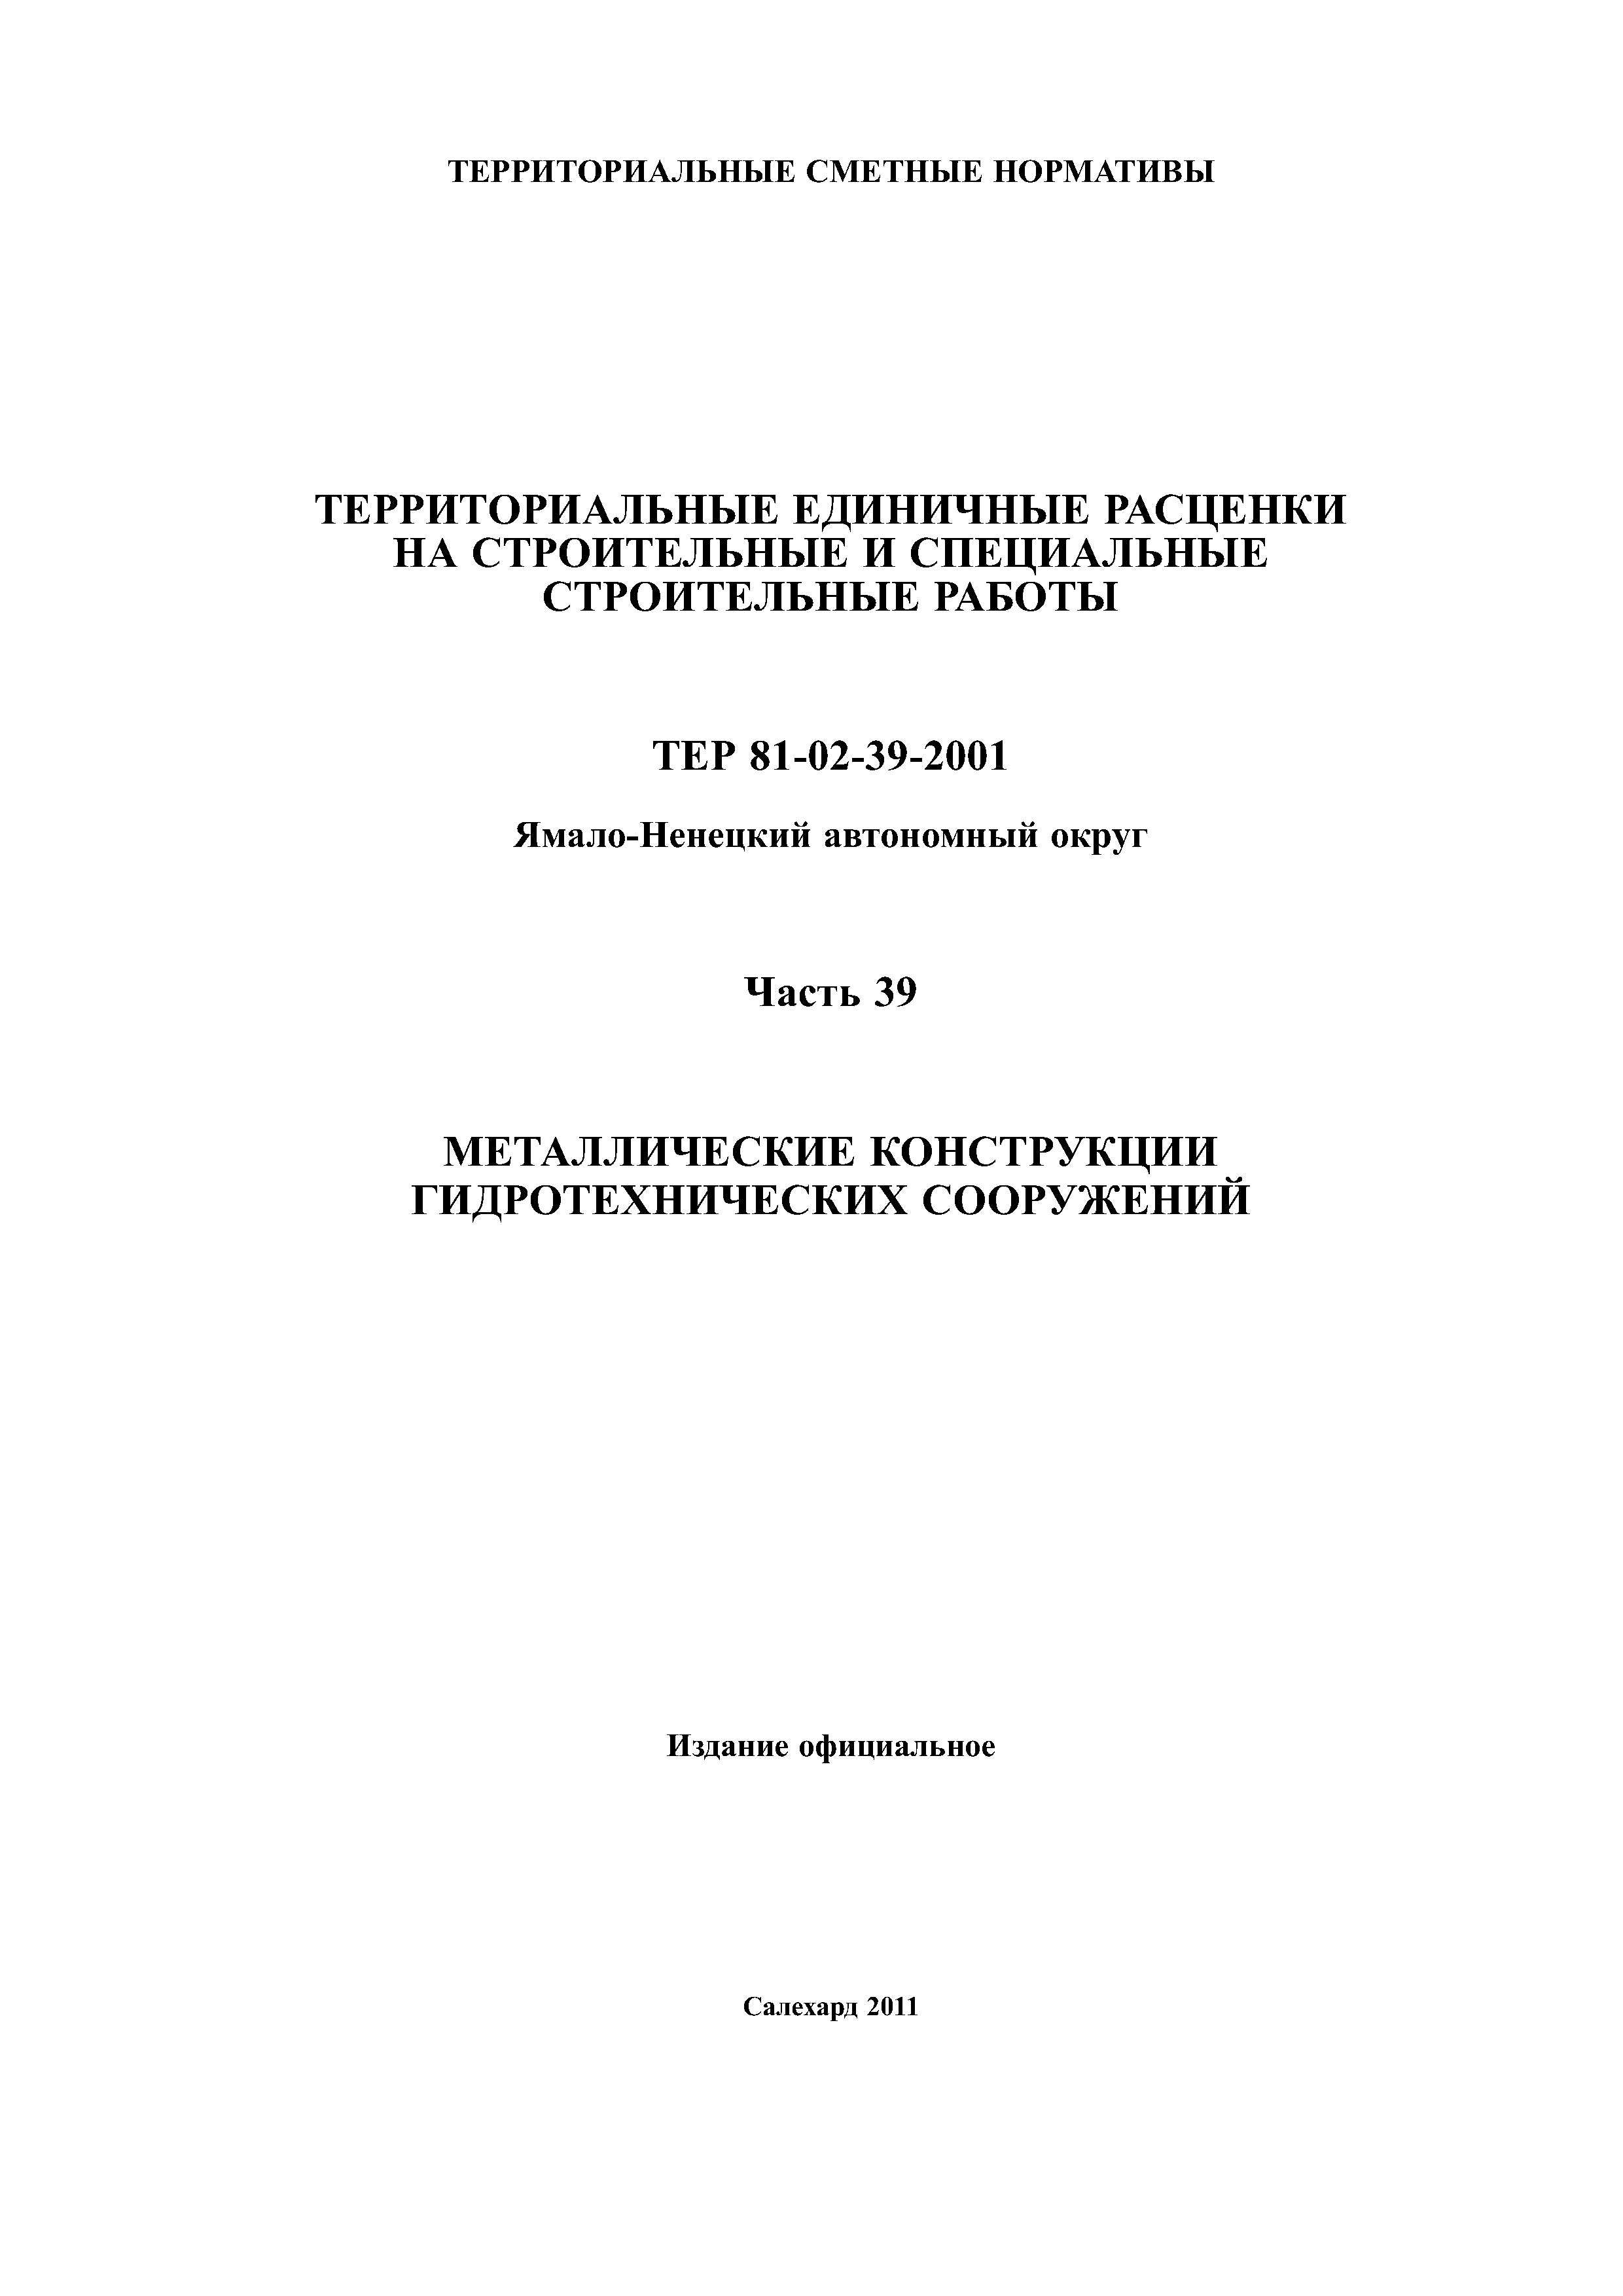 ТЕР Ямало-Ненецкий автономный округ 39-2001